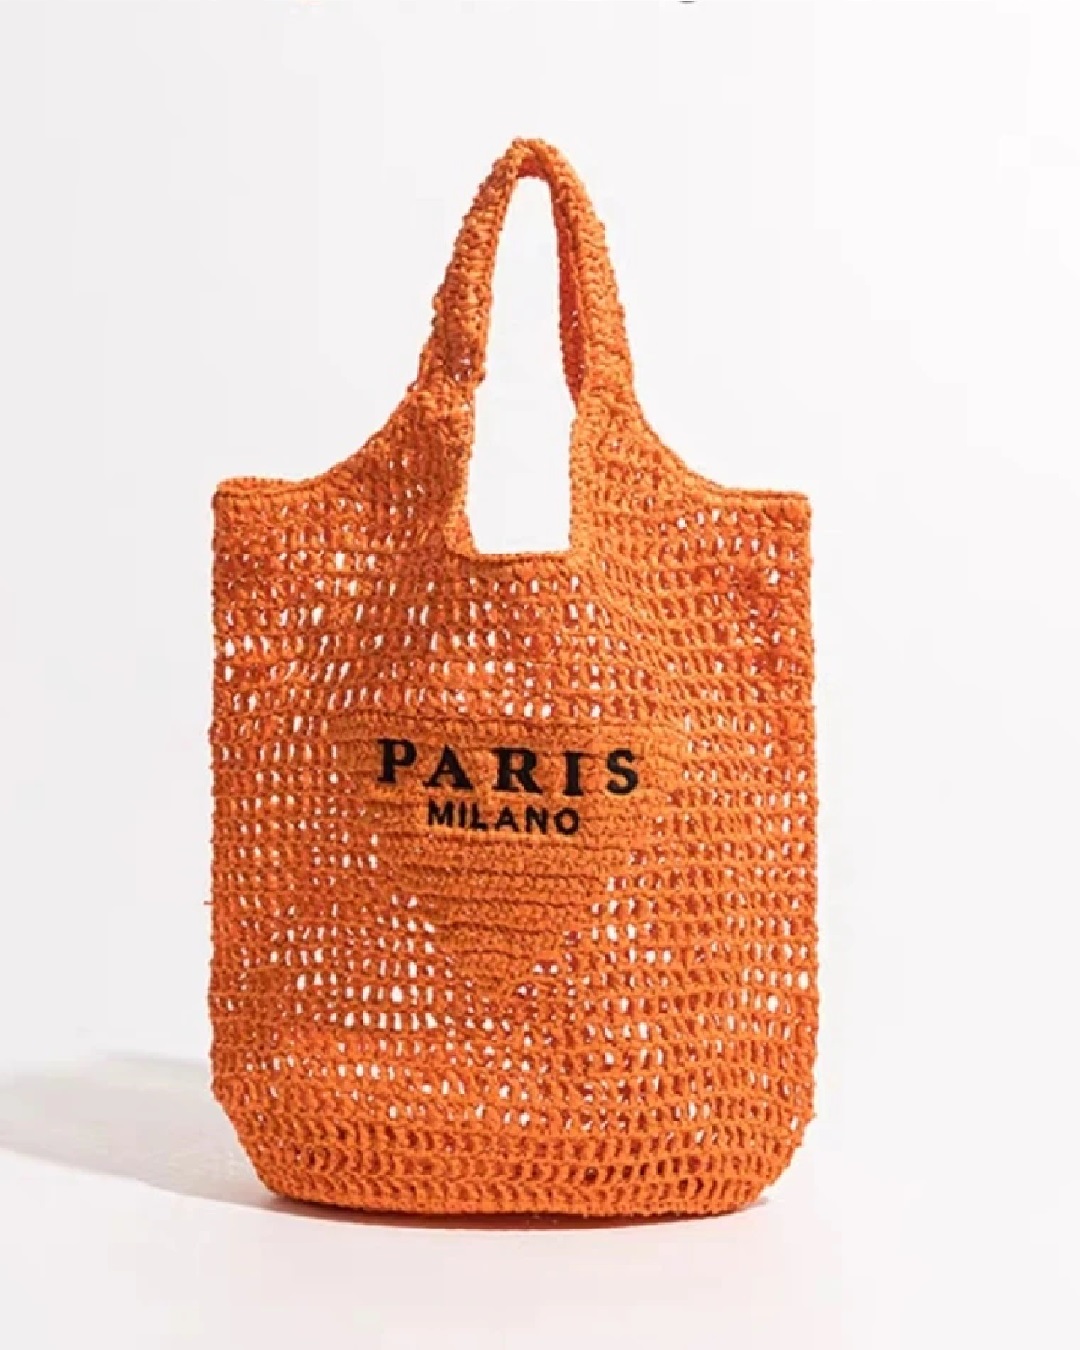 Paris tote bag in orange